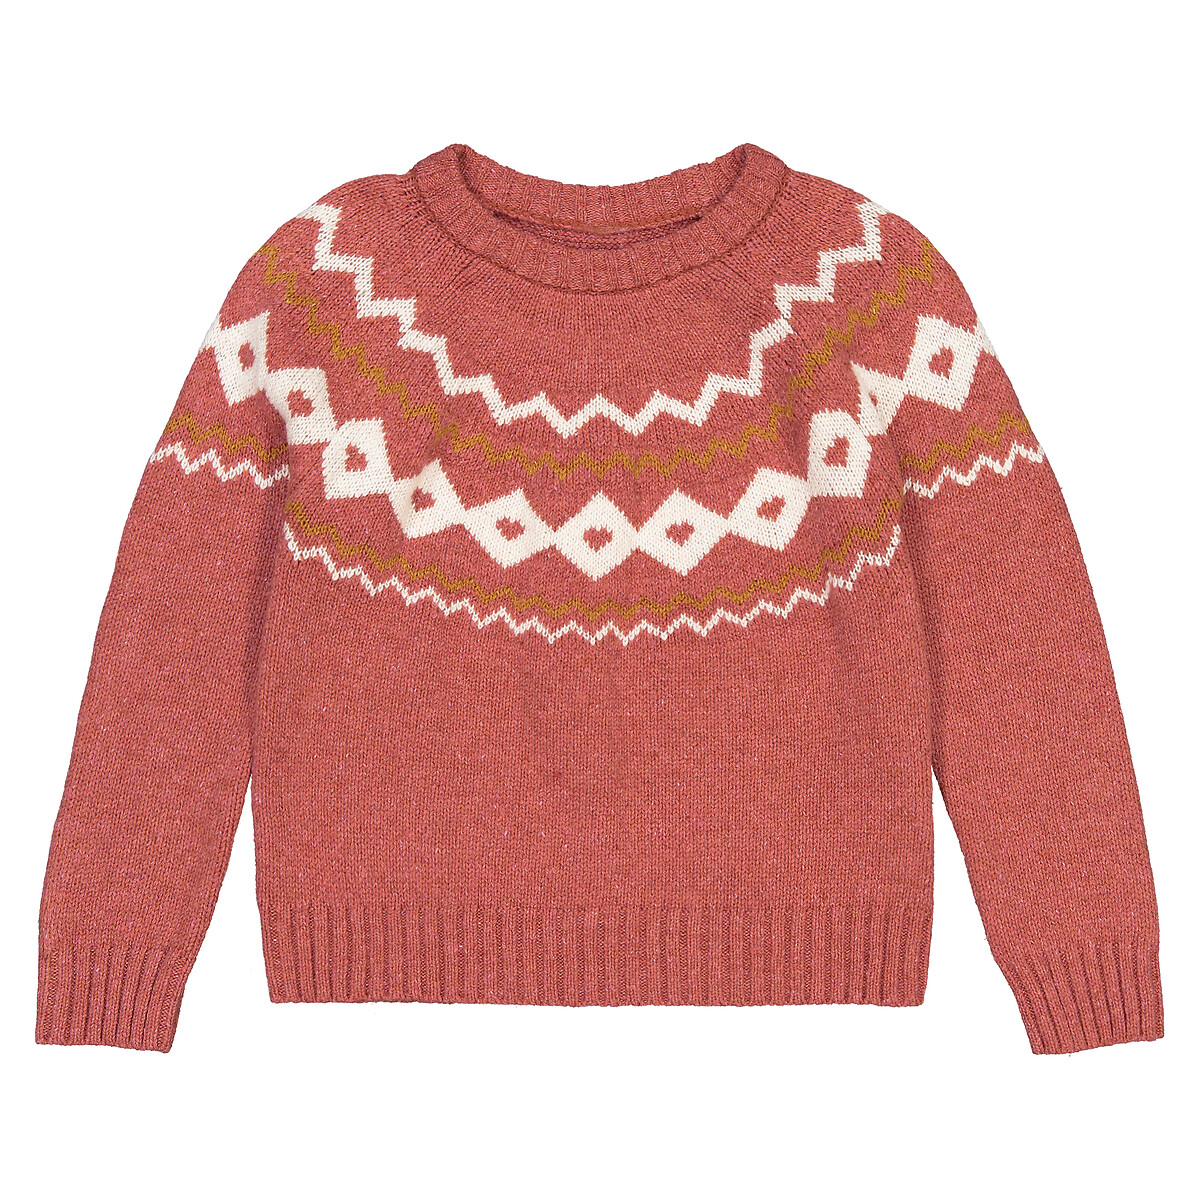 Пуловер LaRedoute С круглым вырезом из тонкого трикотажа жаккард 3-12 лет 6 лет - 114 см розовый, размер 6 лет - 114 см - фото 3